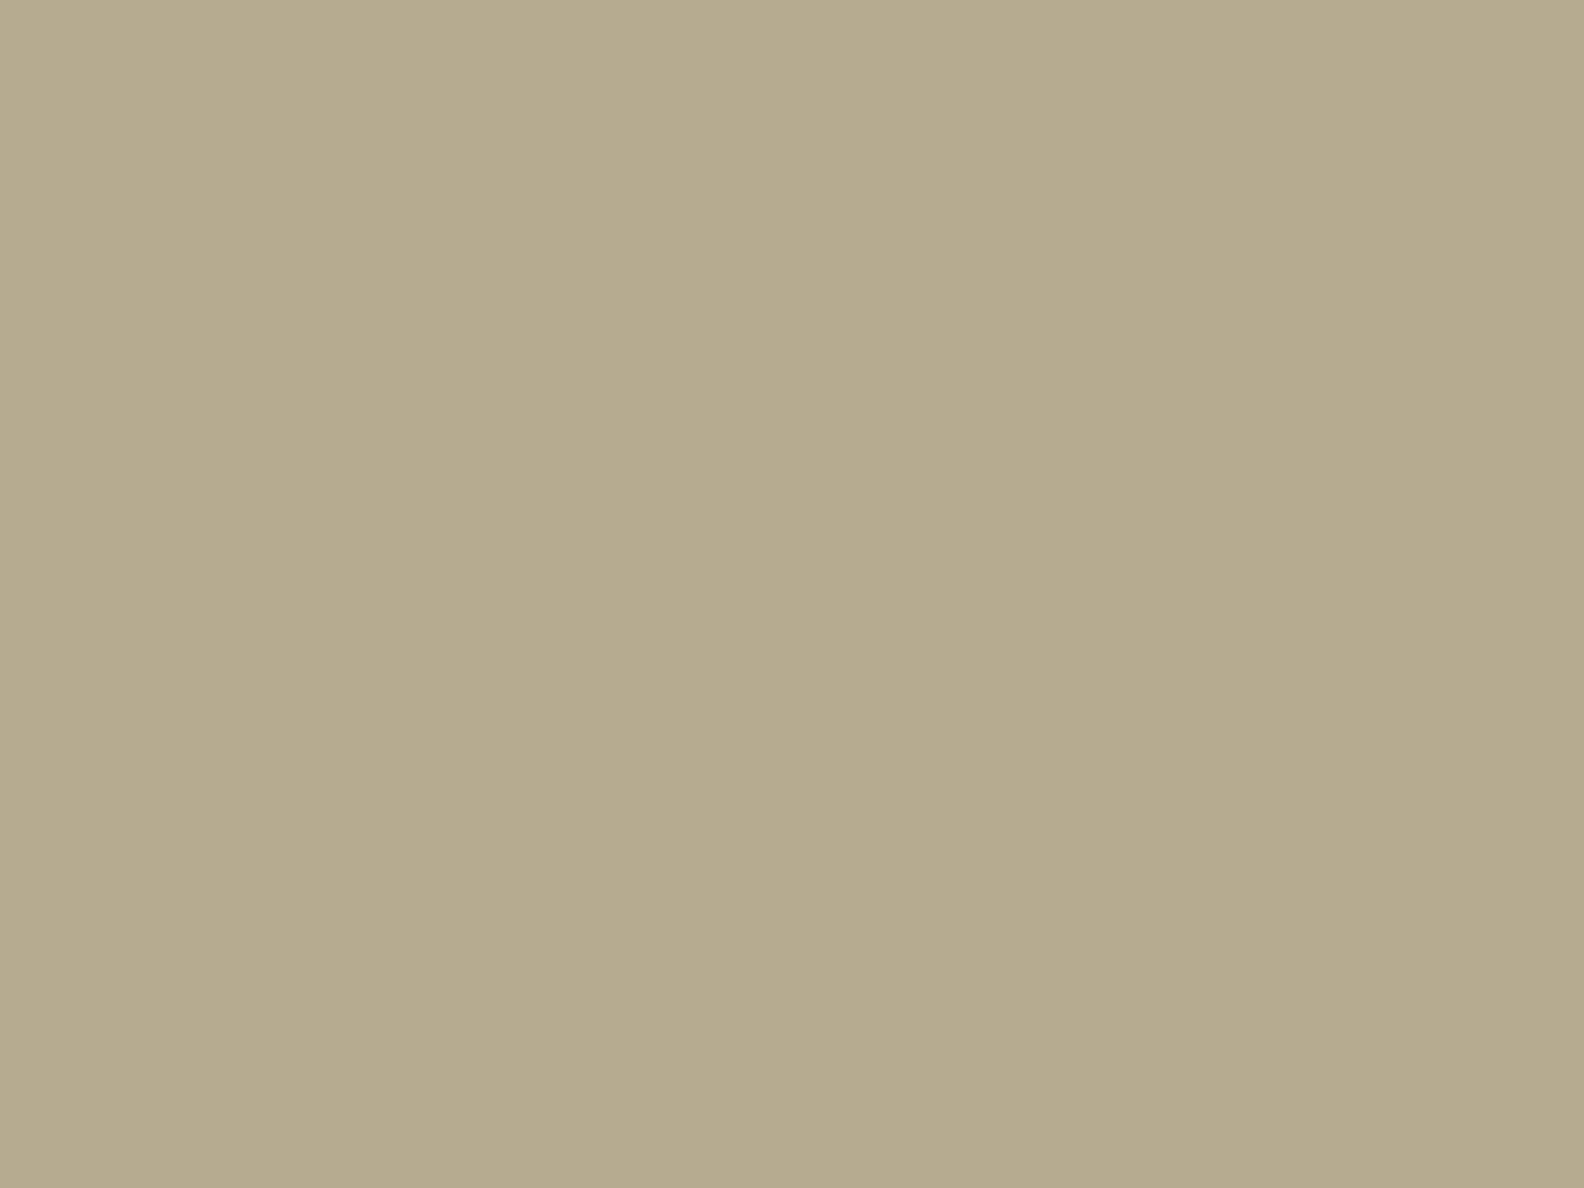 Григорий Мясоедов. Страдная пора. Косцы (фрагмент). 1887. Государственный Русский музей, Санкт-Петербург